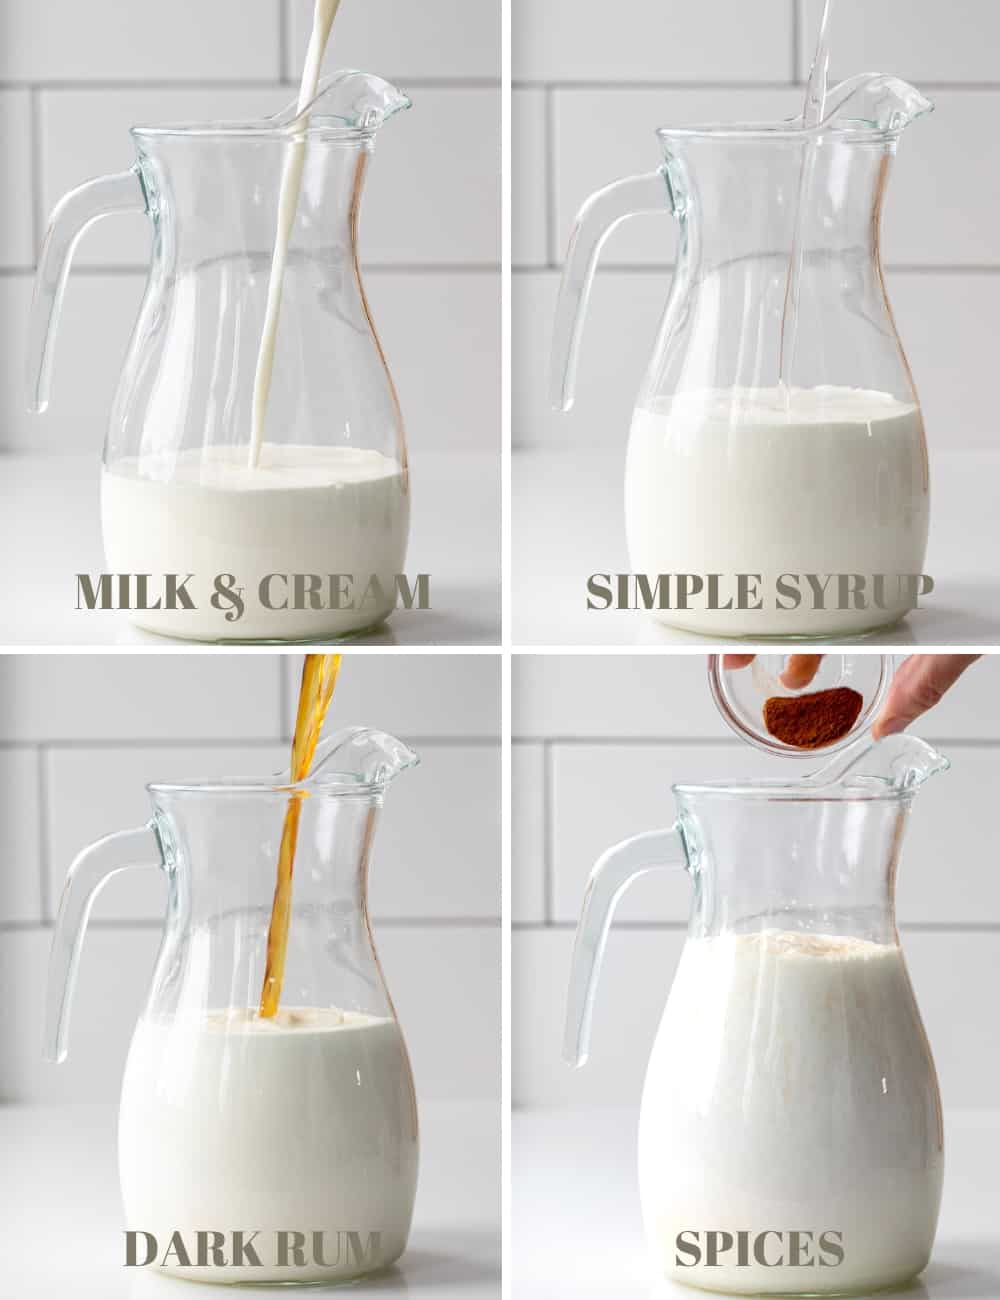 将牛奶、奶油、简单的糖浆、朗姆酒和香料添加到玻璃水罐中，自制朗姆酒。